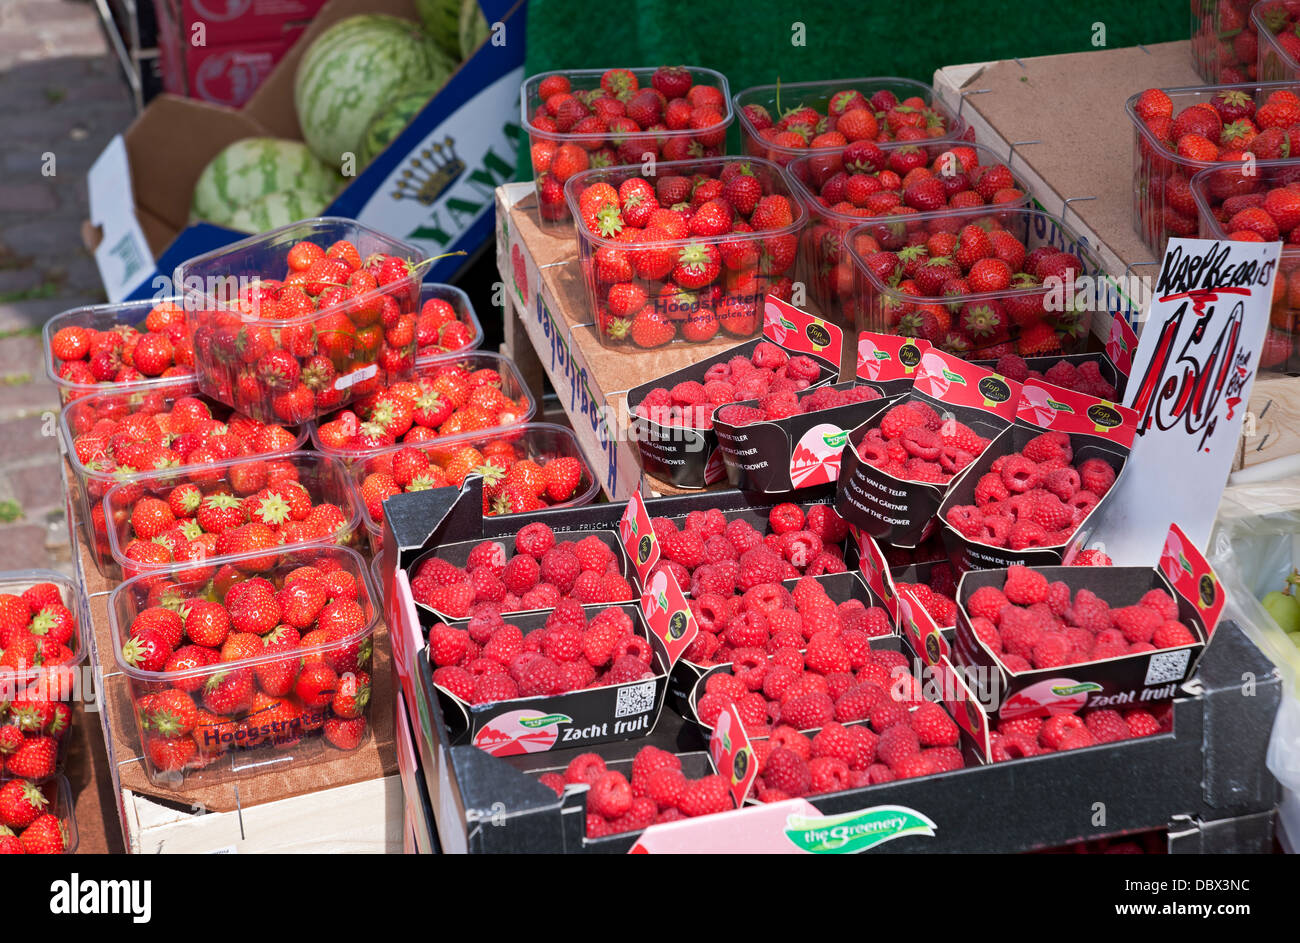 Punnets de fraises fraîches et framboises à vendre sur le marché de l'été York North Yorkshire Angleterre Royaume-Uni GB Grande-Bretagne Banque D'Images